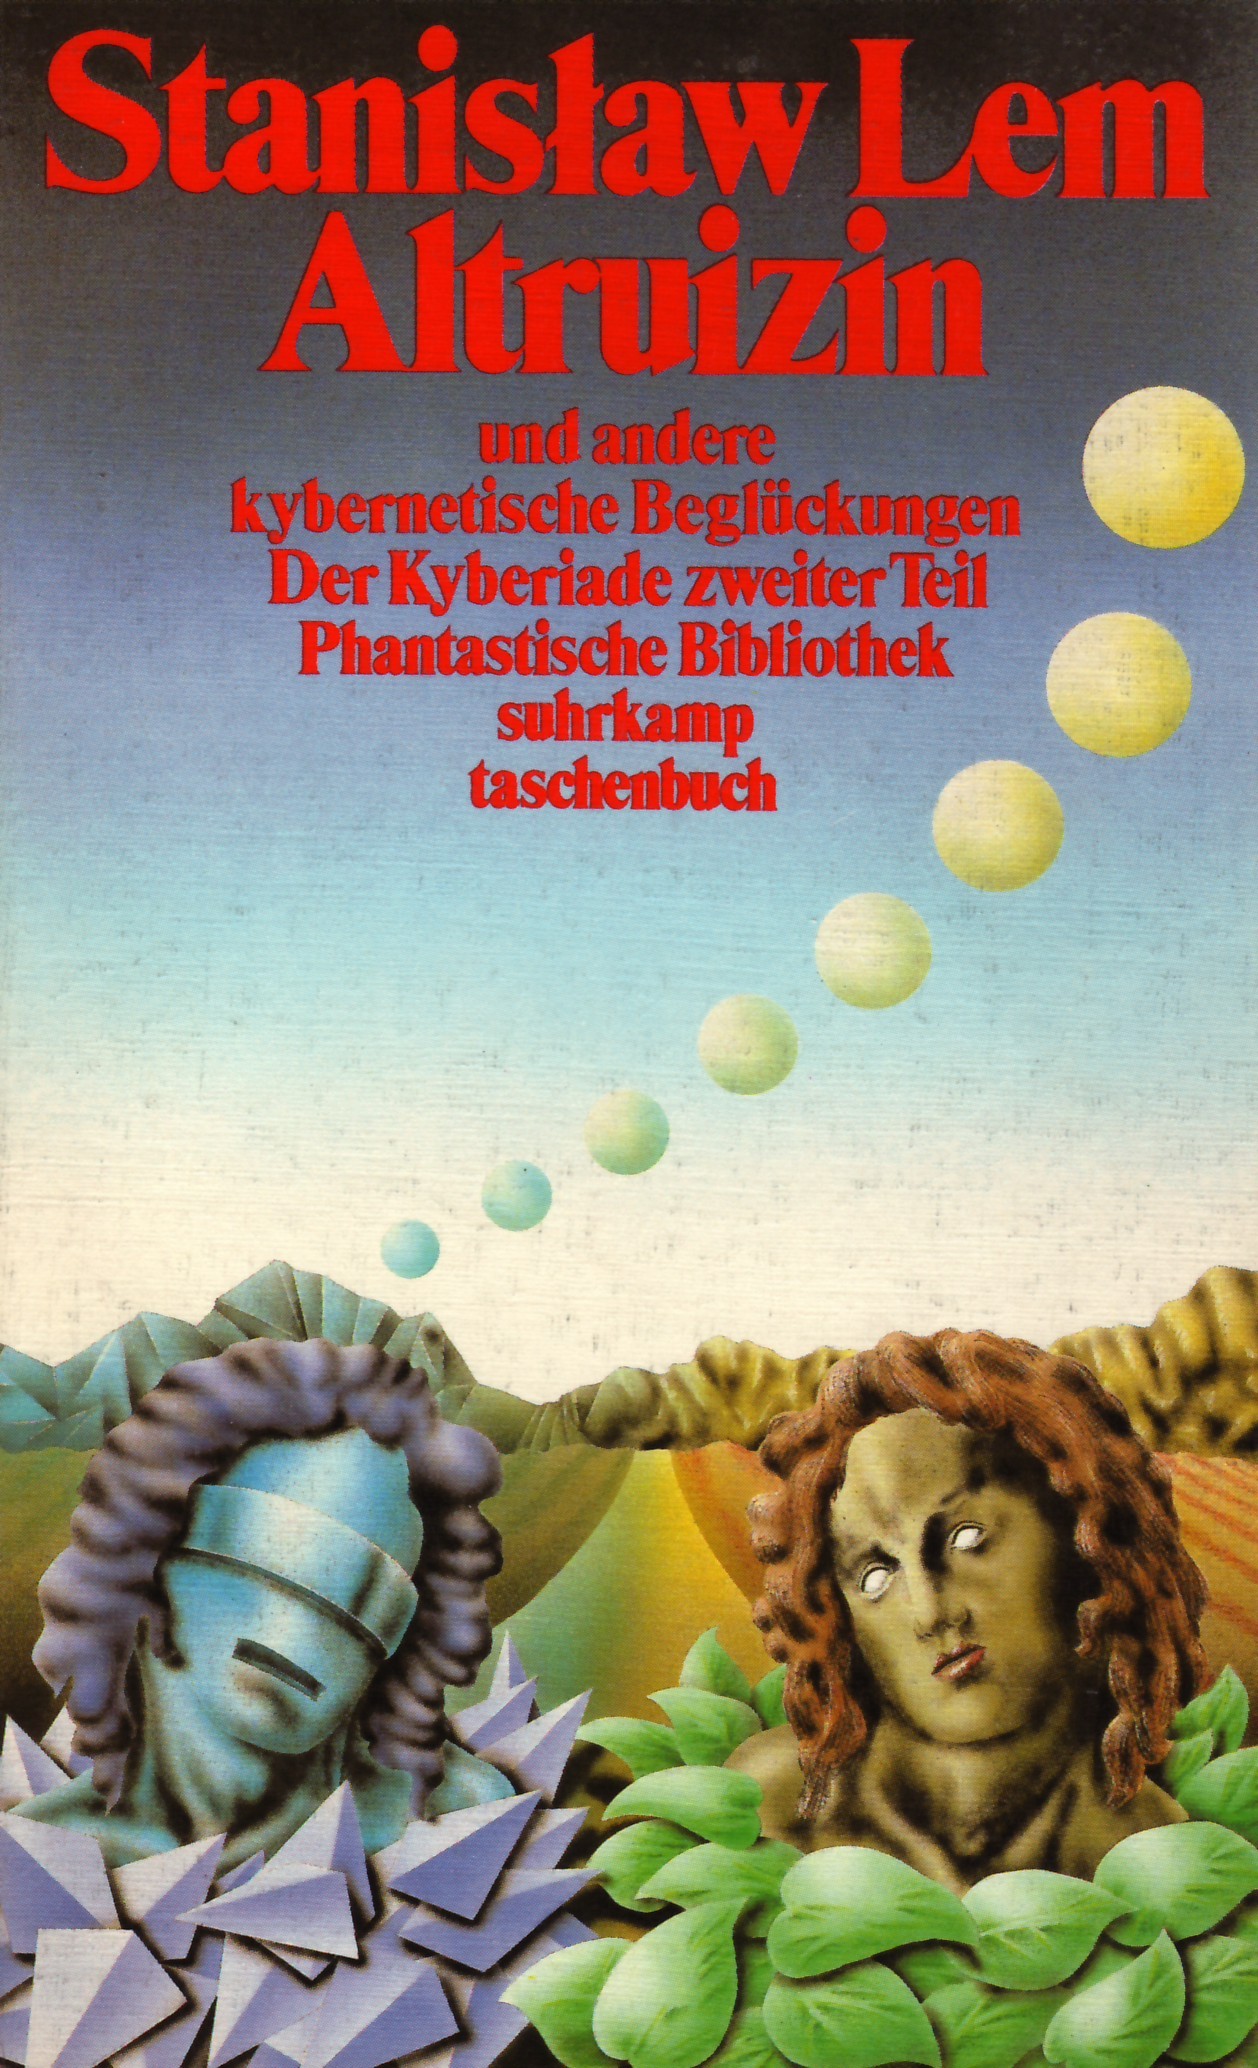 Cyberiad German Suhrkamp 1985 (Altruizin).jpg